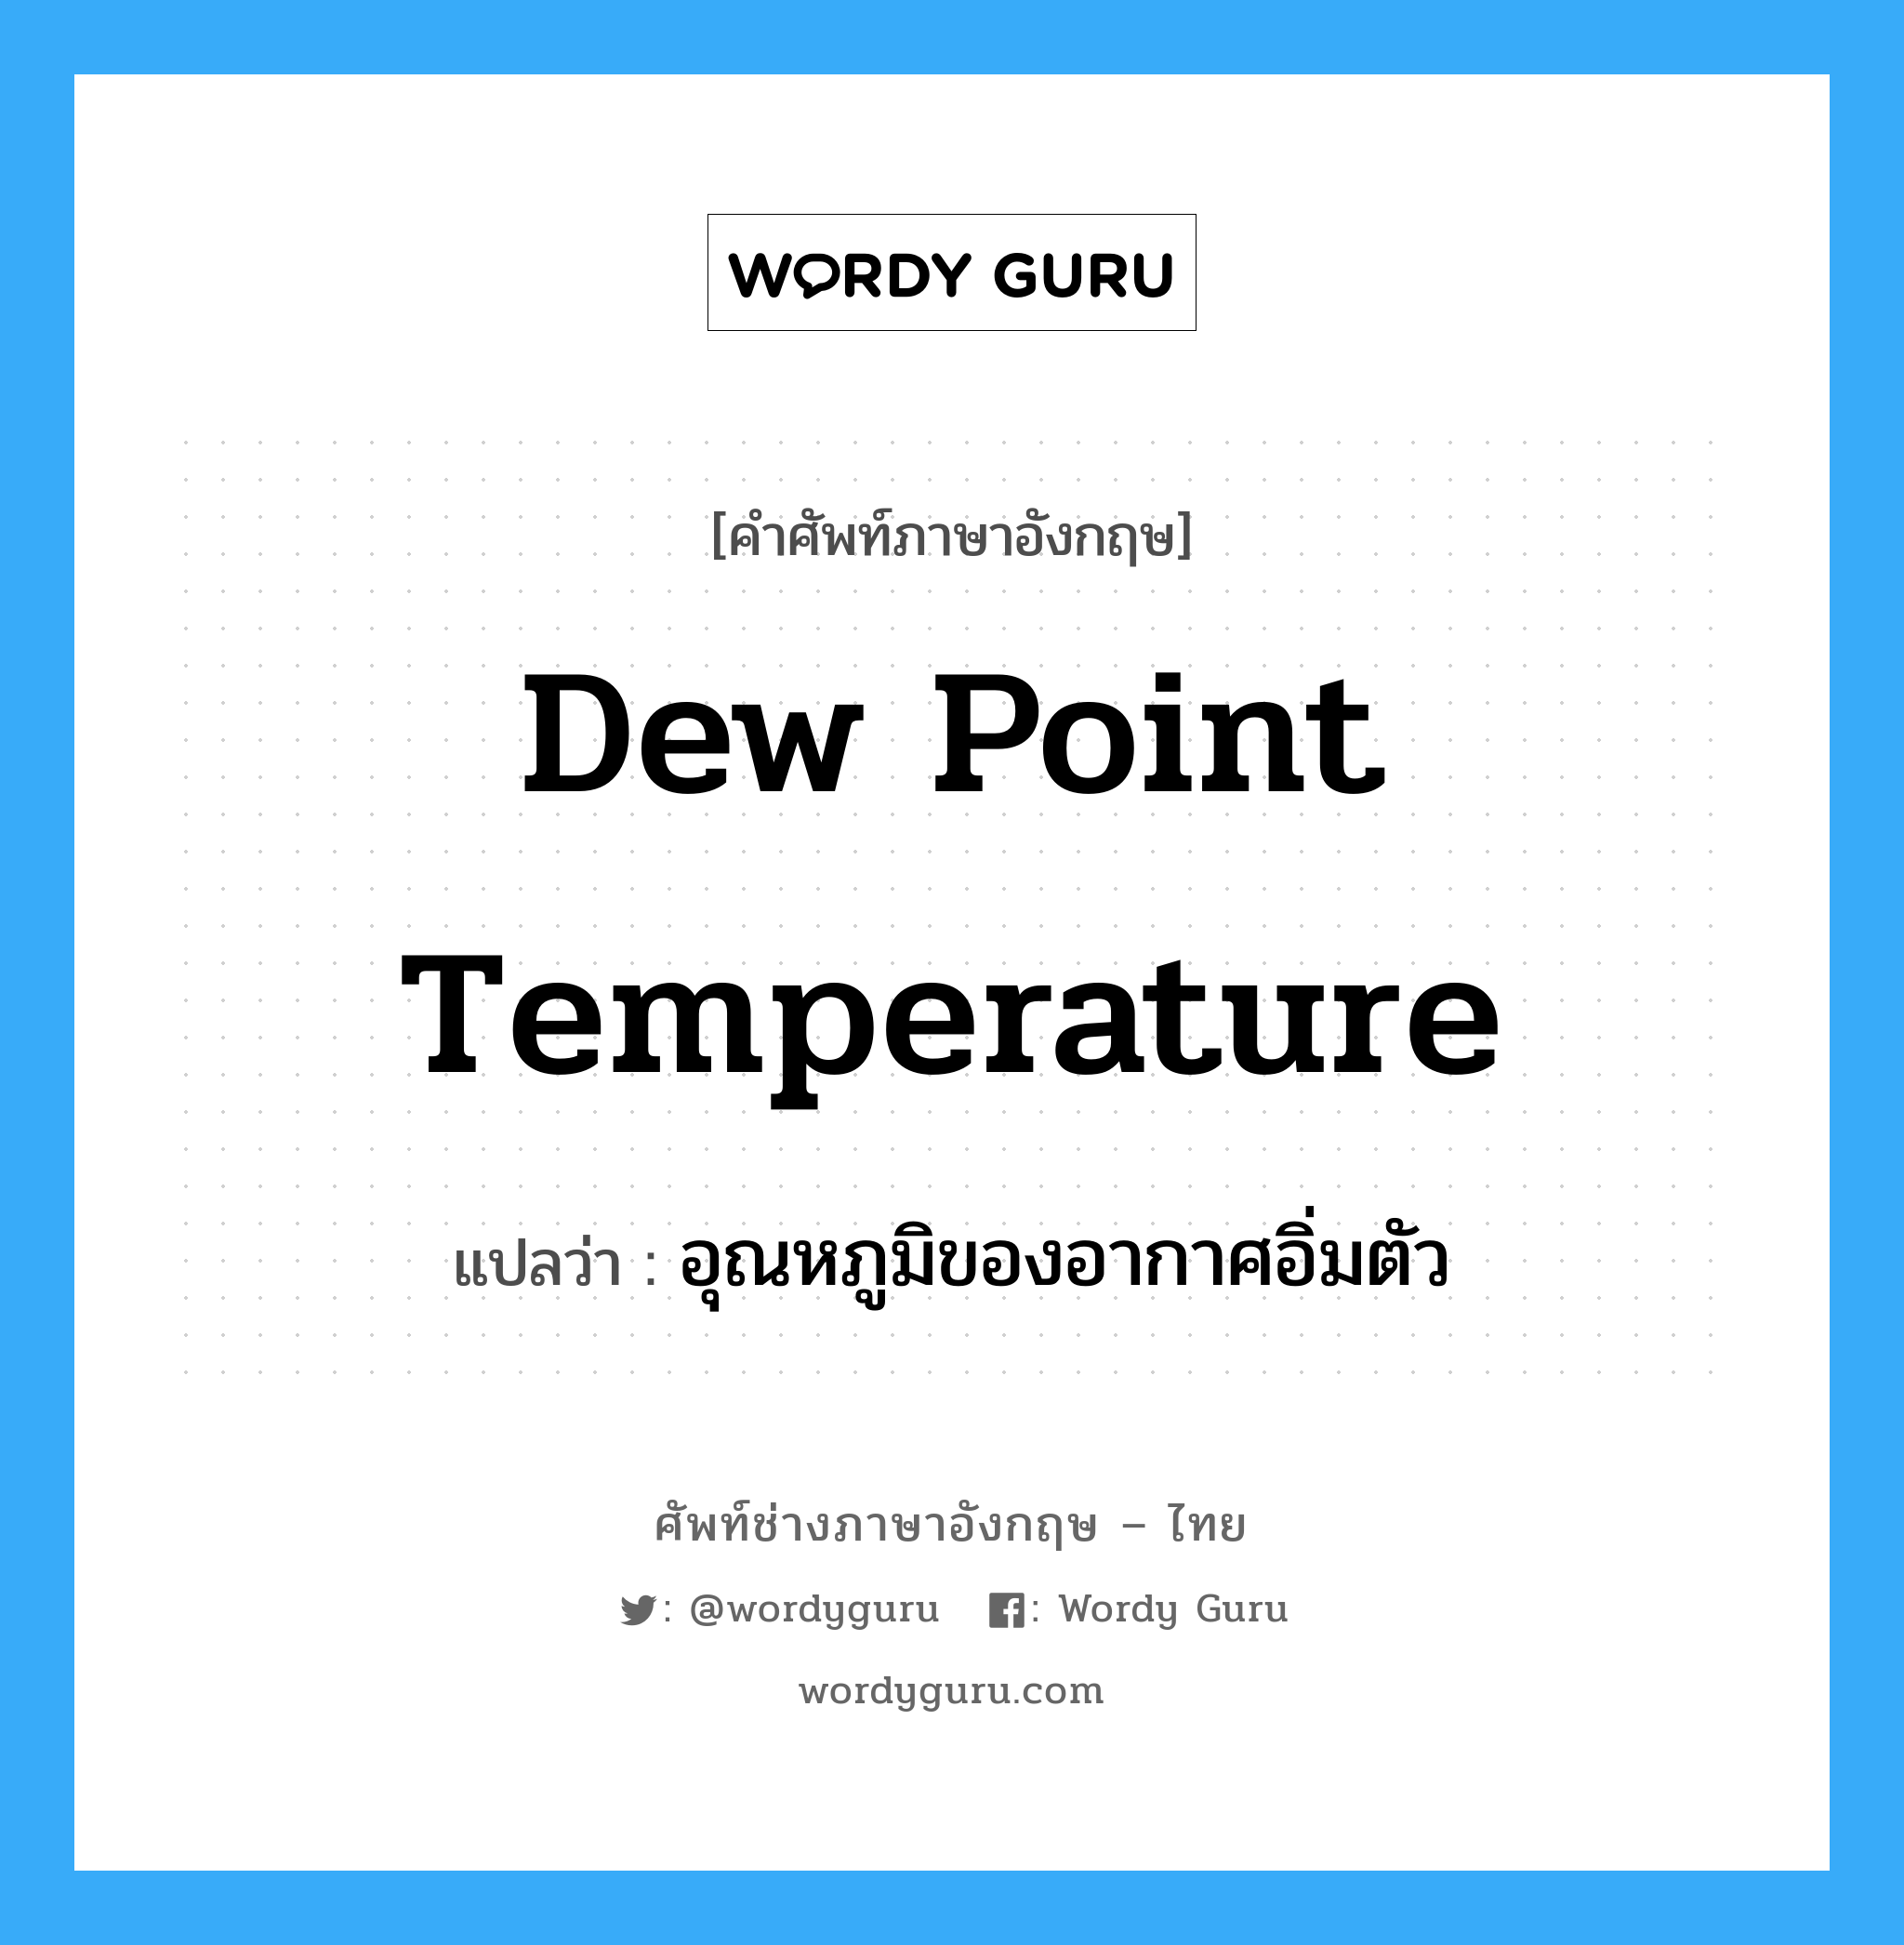 dew point temperature แปลว่า?, คำศัพท์ช่างภาษาอังกฤษ - ไทย dew point temperature คำศัพท์ภาษาอังกฤษ dew point temperature แปลว่า อุณหภูมิของอากาศอิ่มตัว